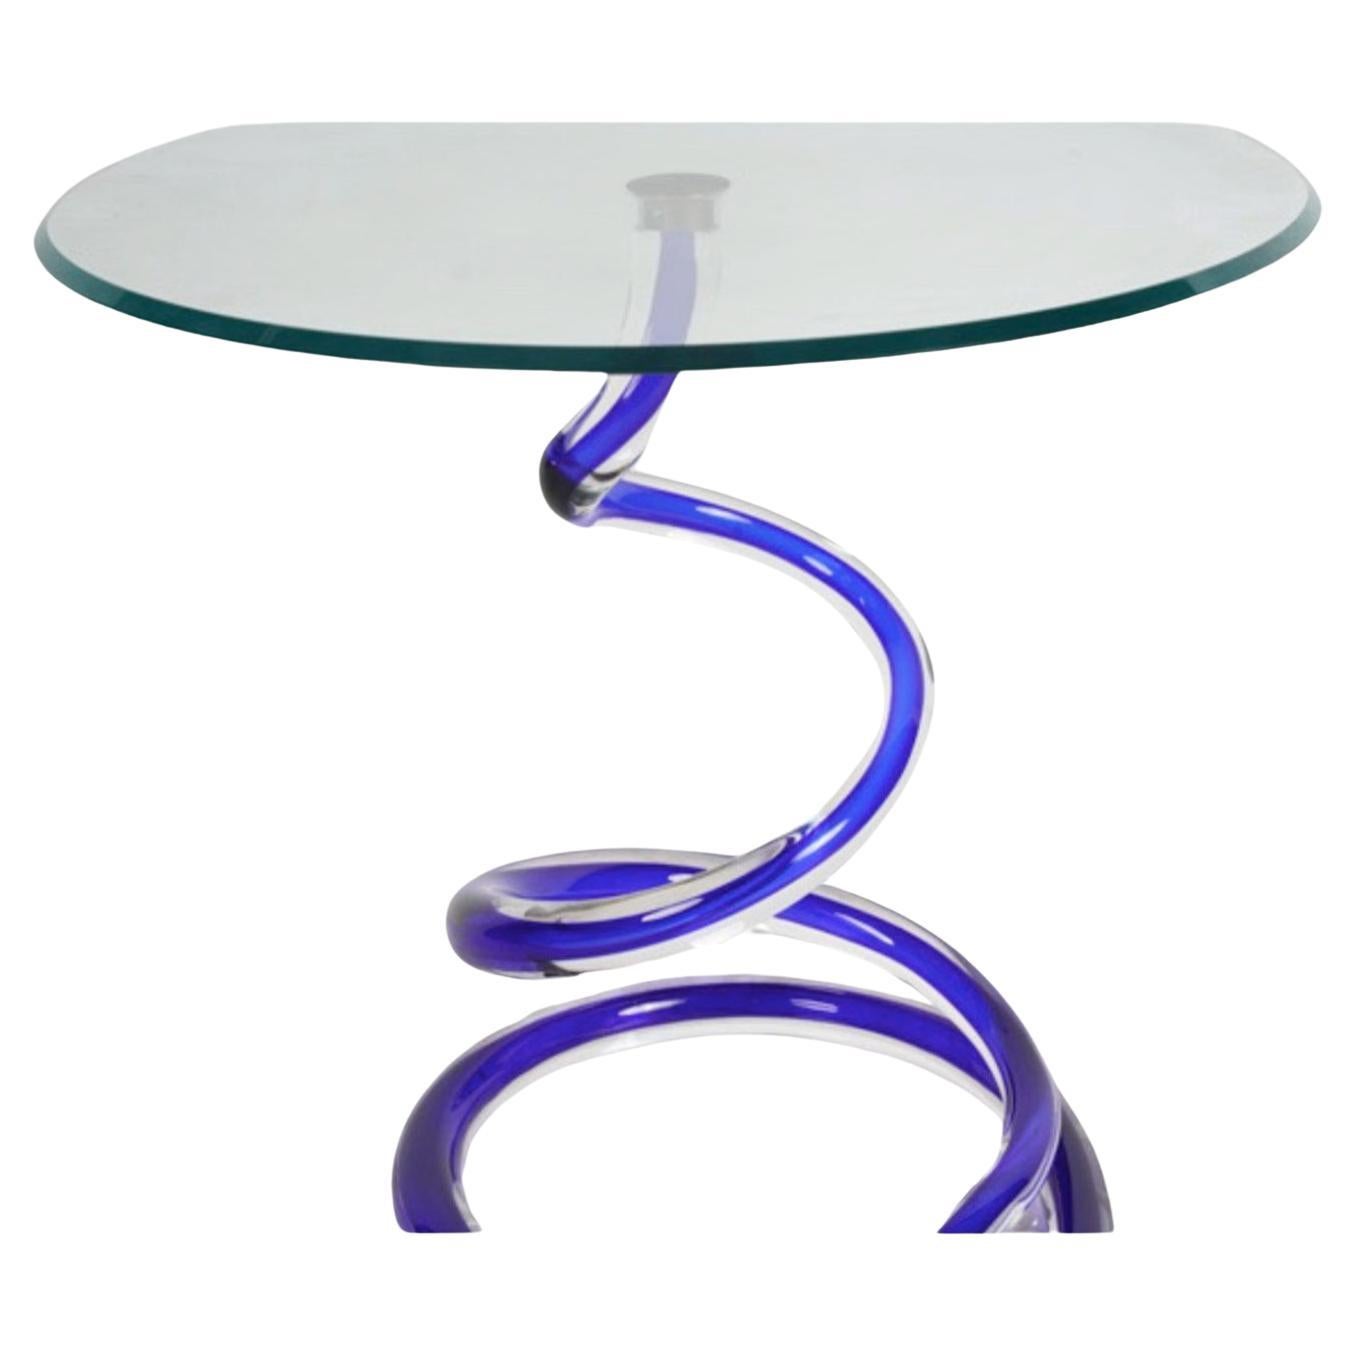 Dies ist ein wunderschöner mundgeblasener Glastisch des bekannten Murano-Glaskünstlers Alberto Dino. Der Tisch stammt aus dem frühen 21. Jahrhundert und ist in ausgezeichnetem Zustand. Der gewirbelte, röhrenförmige, ummantelte Glassockel wird von